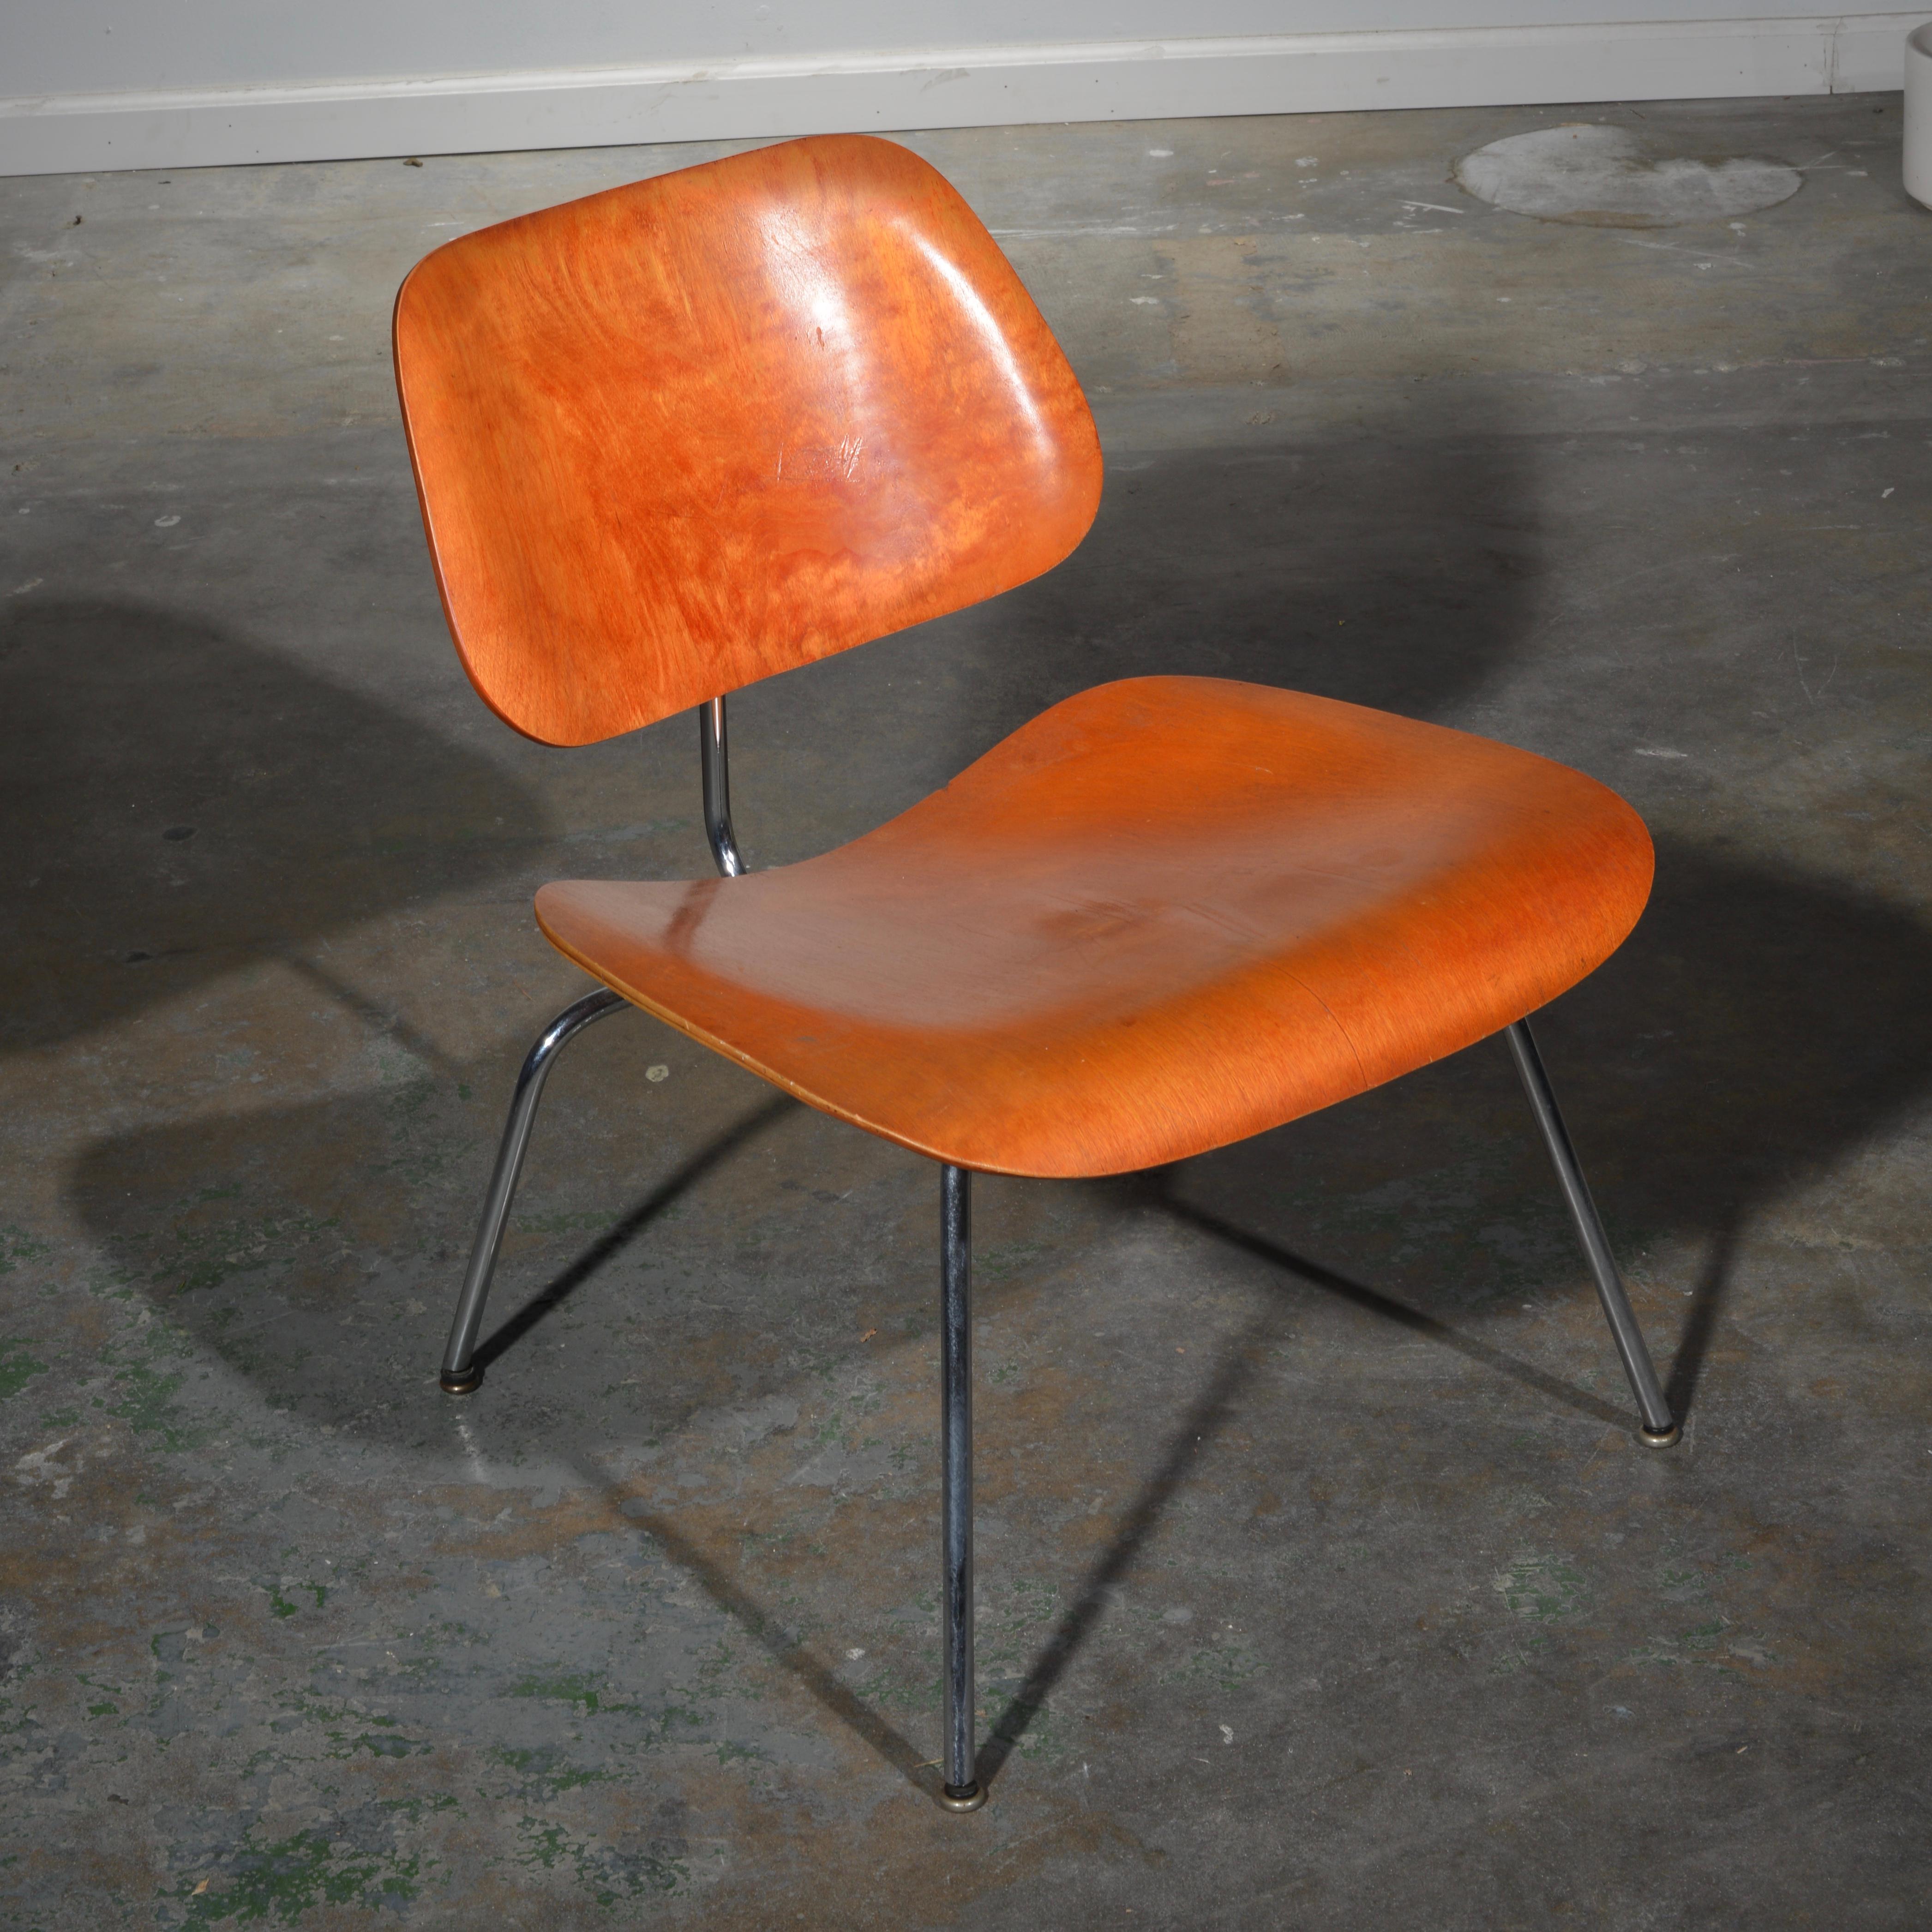 Dies ist ein äußerst seltener LCM-Stuhl aus dem ersten Jahr der Evans-Produktion, entworfen von Charles und Ray Eames. Dieses LCM hat seine ursprüngliche rote Anilinfarbe, verchromte Beine, das Evans Label und die Kuppeln der Silence Gleiter.